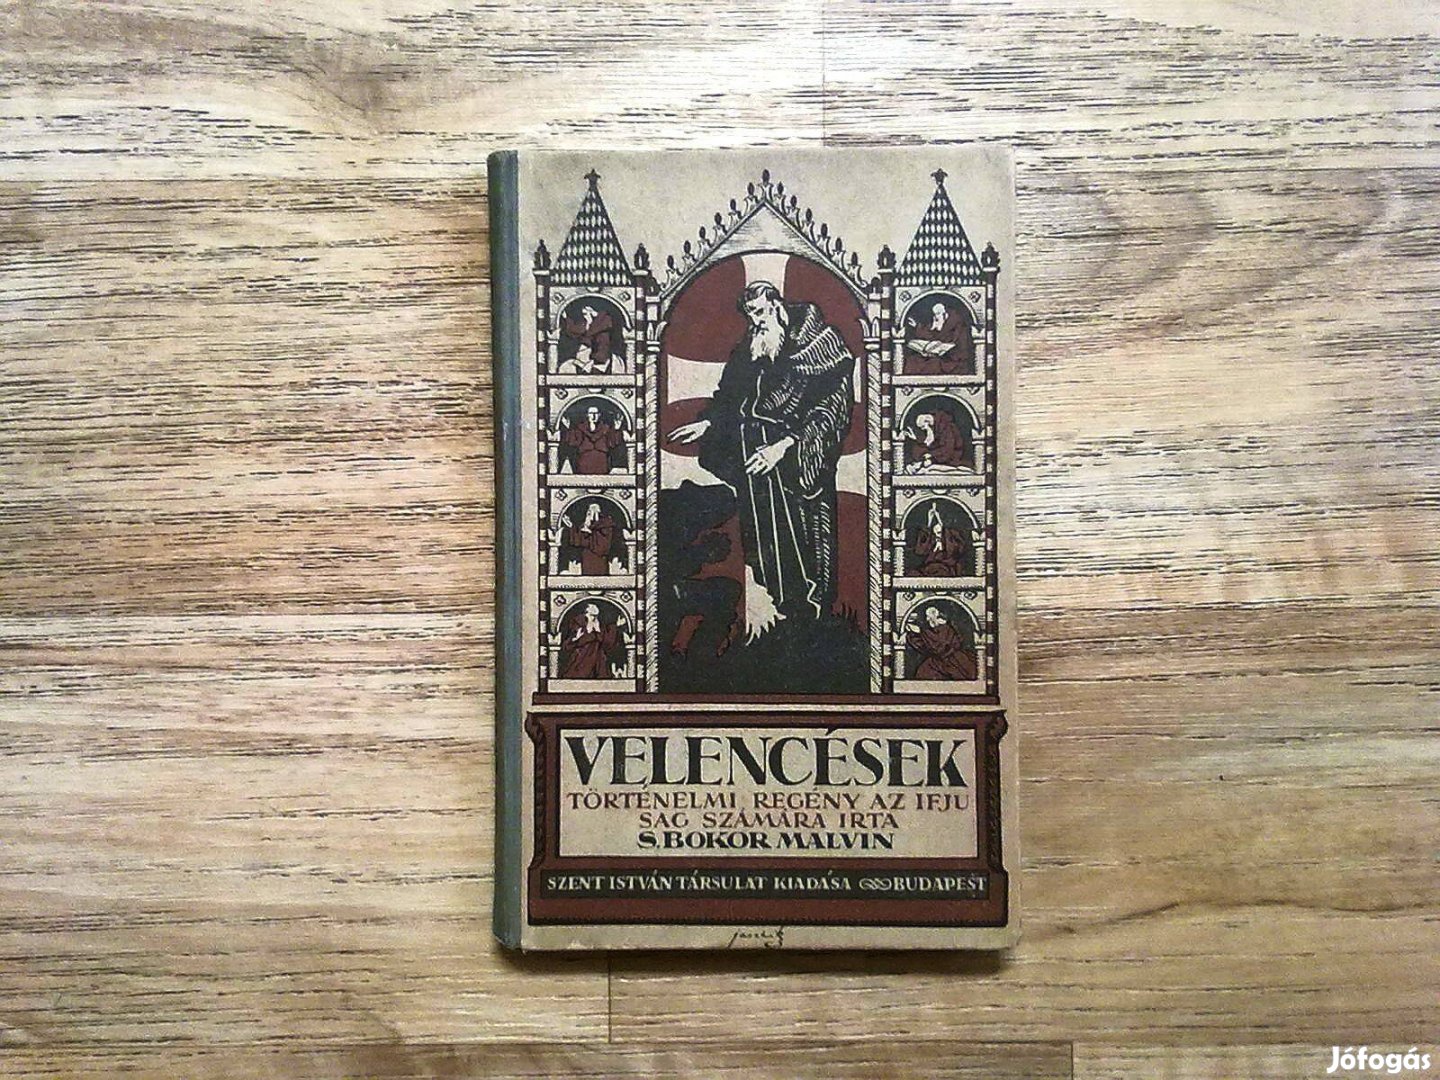 Velencések (Történelmi regény az ifjúság számára) 1925-ös kiadás